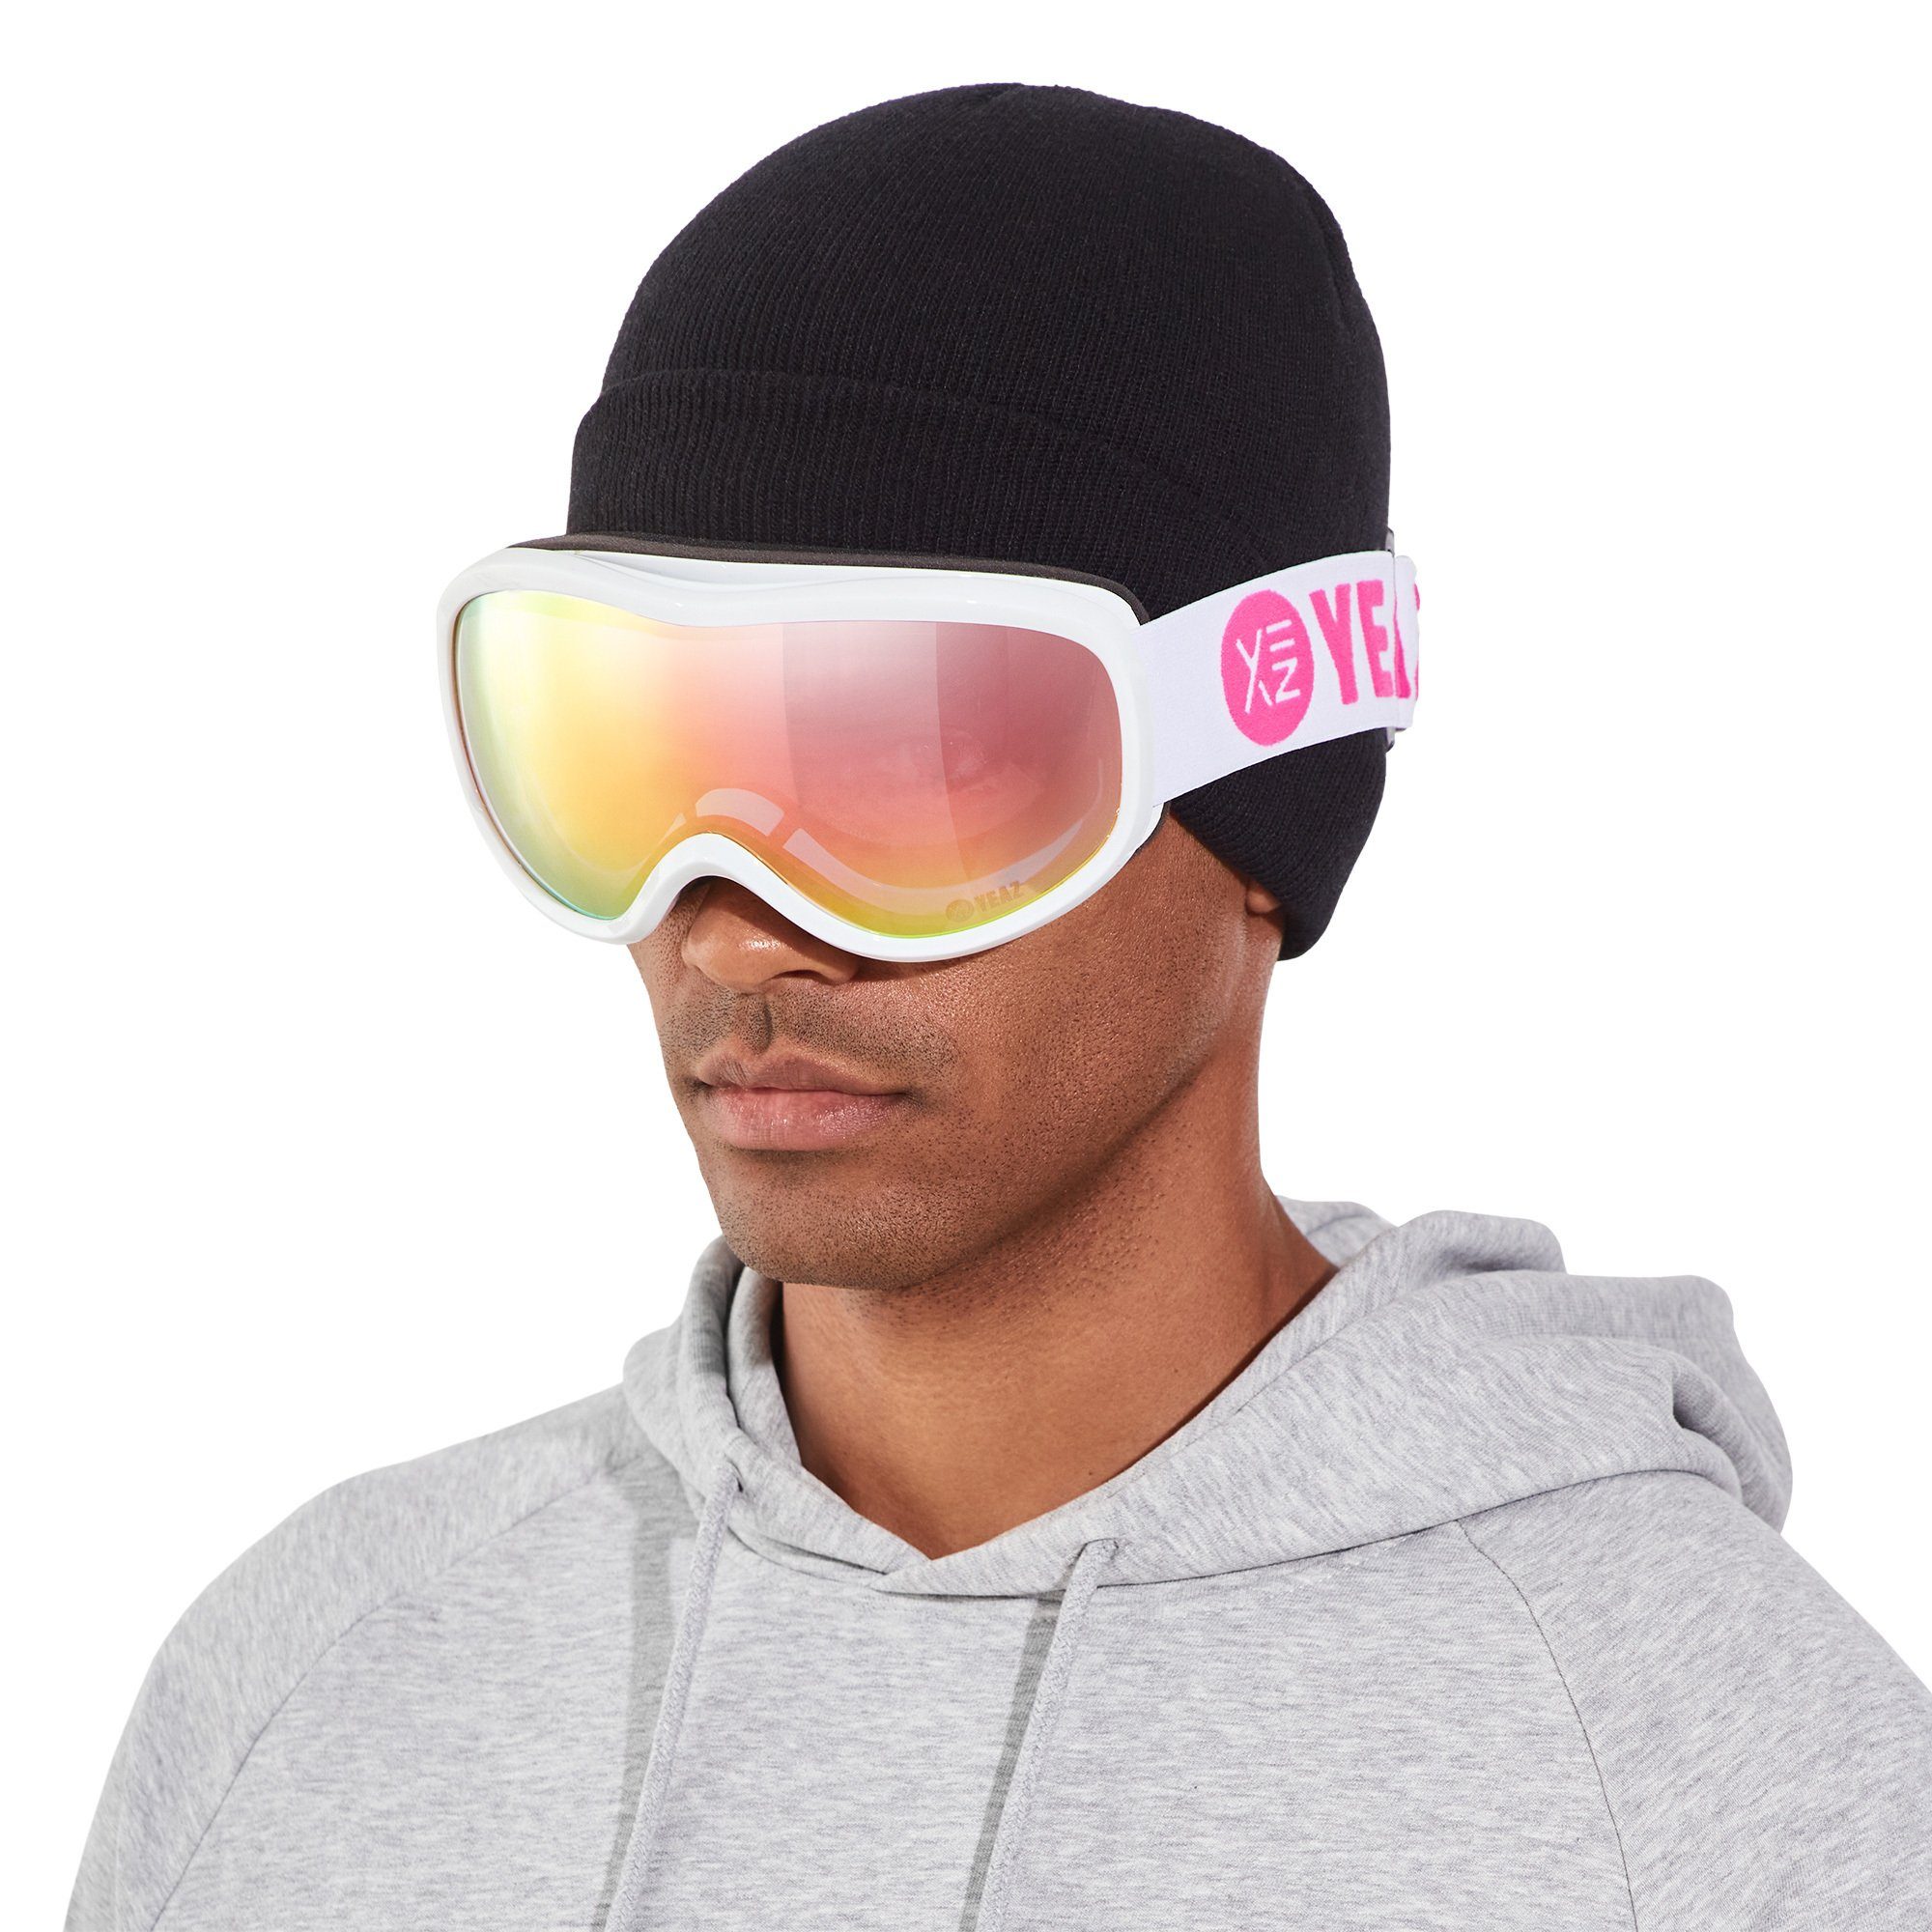 pink/weiss, und für und Skibrille und Snowboardbrille Erwachsene ski- Jugendliche Premium-Ski- snowboard-brille YEAZ STEEZE